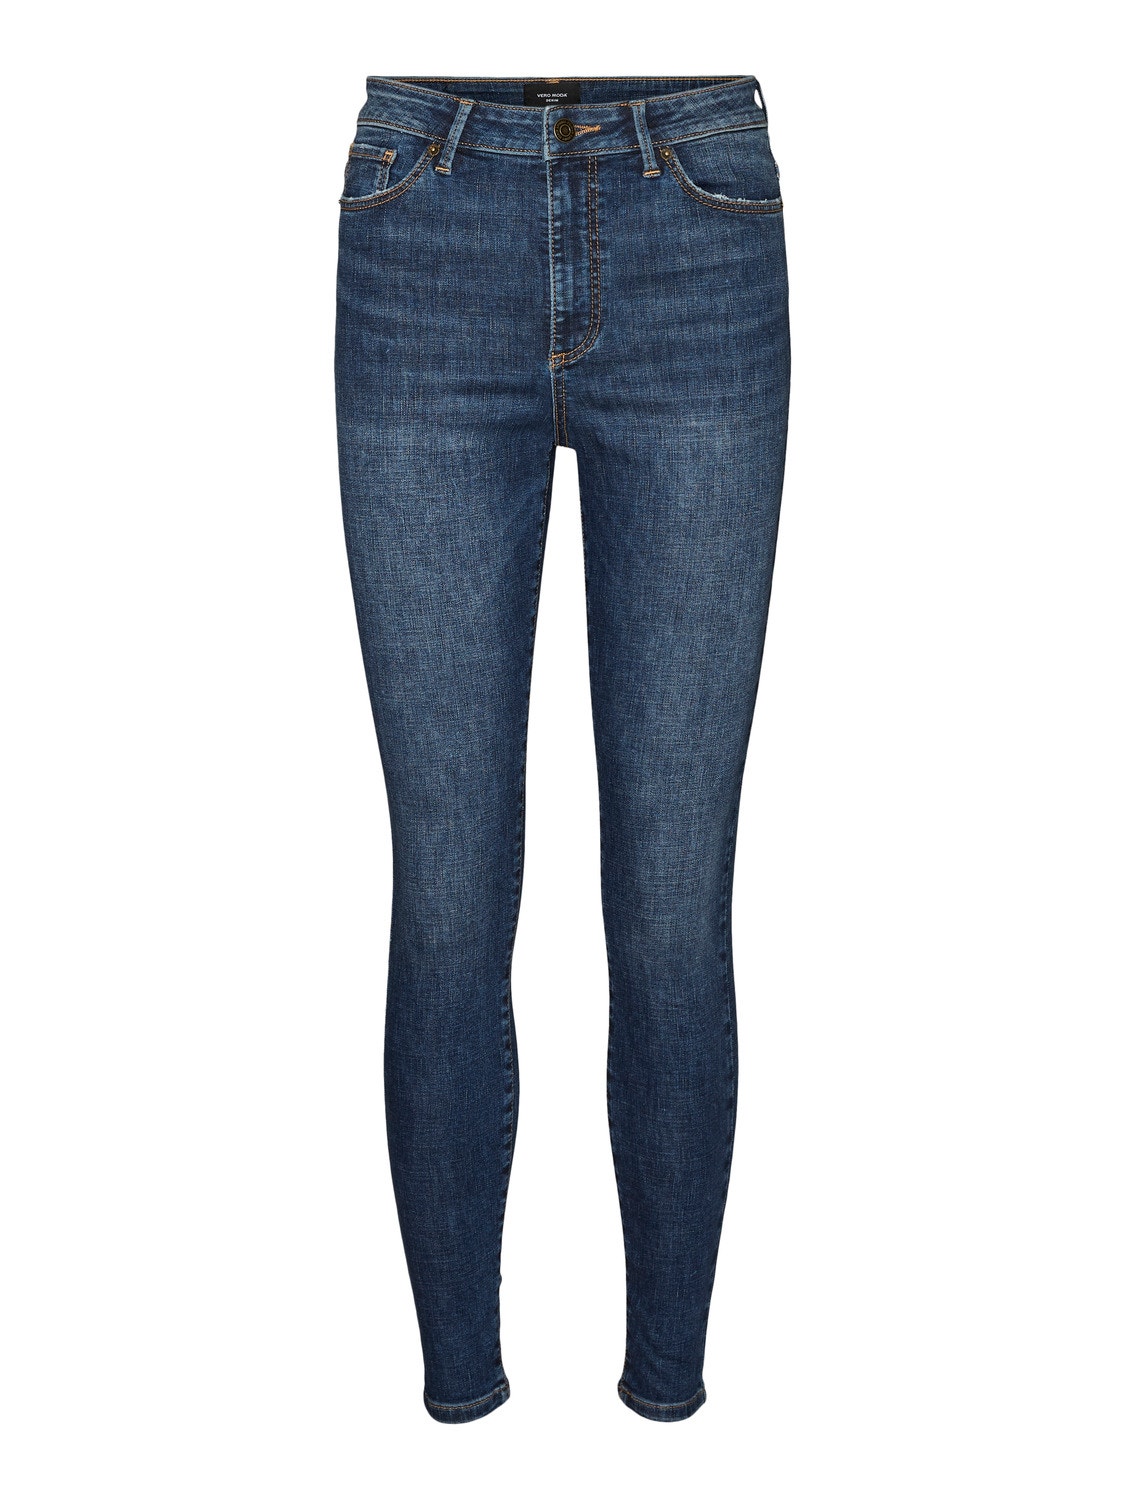 Vero Moda VMSOPHIA Wysoki stan Krój skinny Jeans -Dark Blue Denim - 10248830